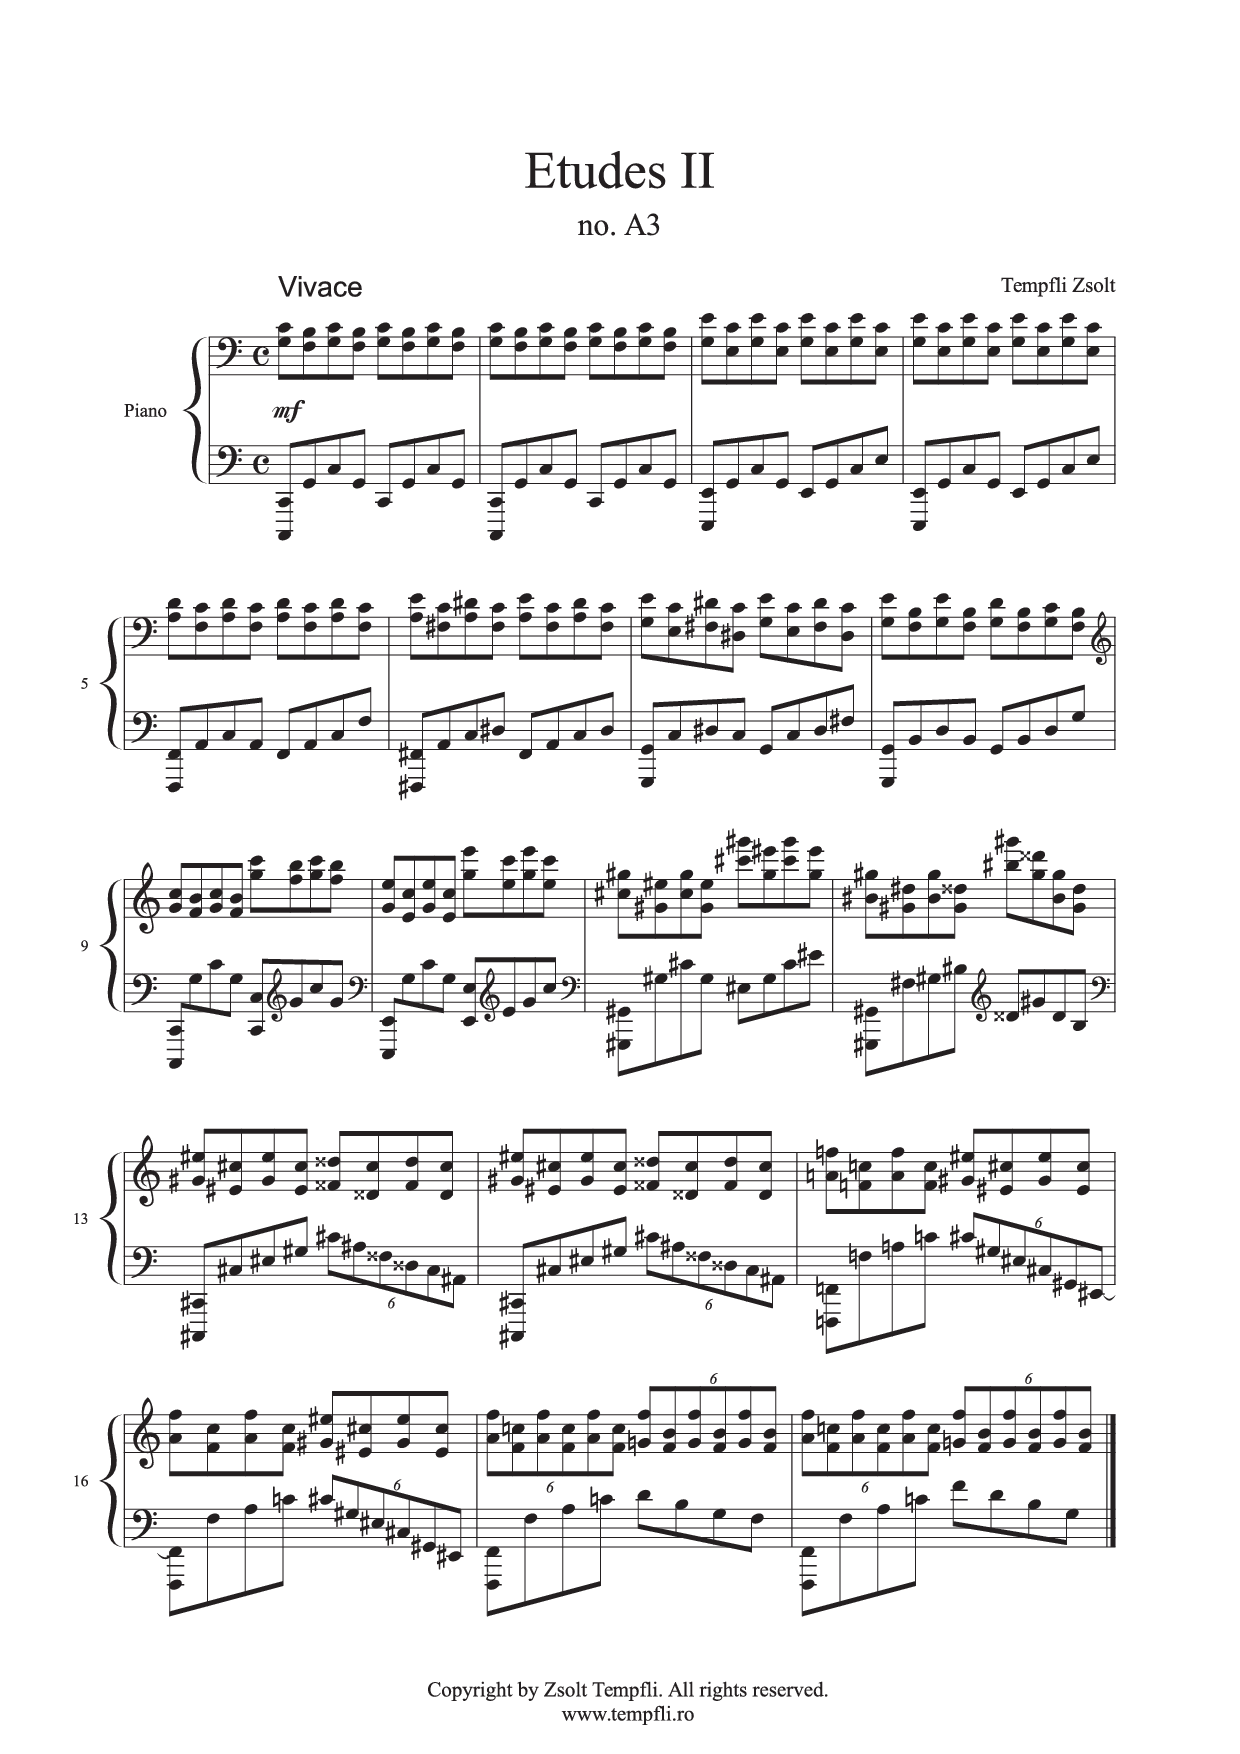 Zsolt Tempfli - Etudes II A3 op. 25 no. A3 for piano